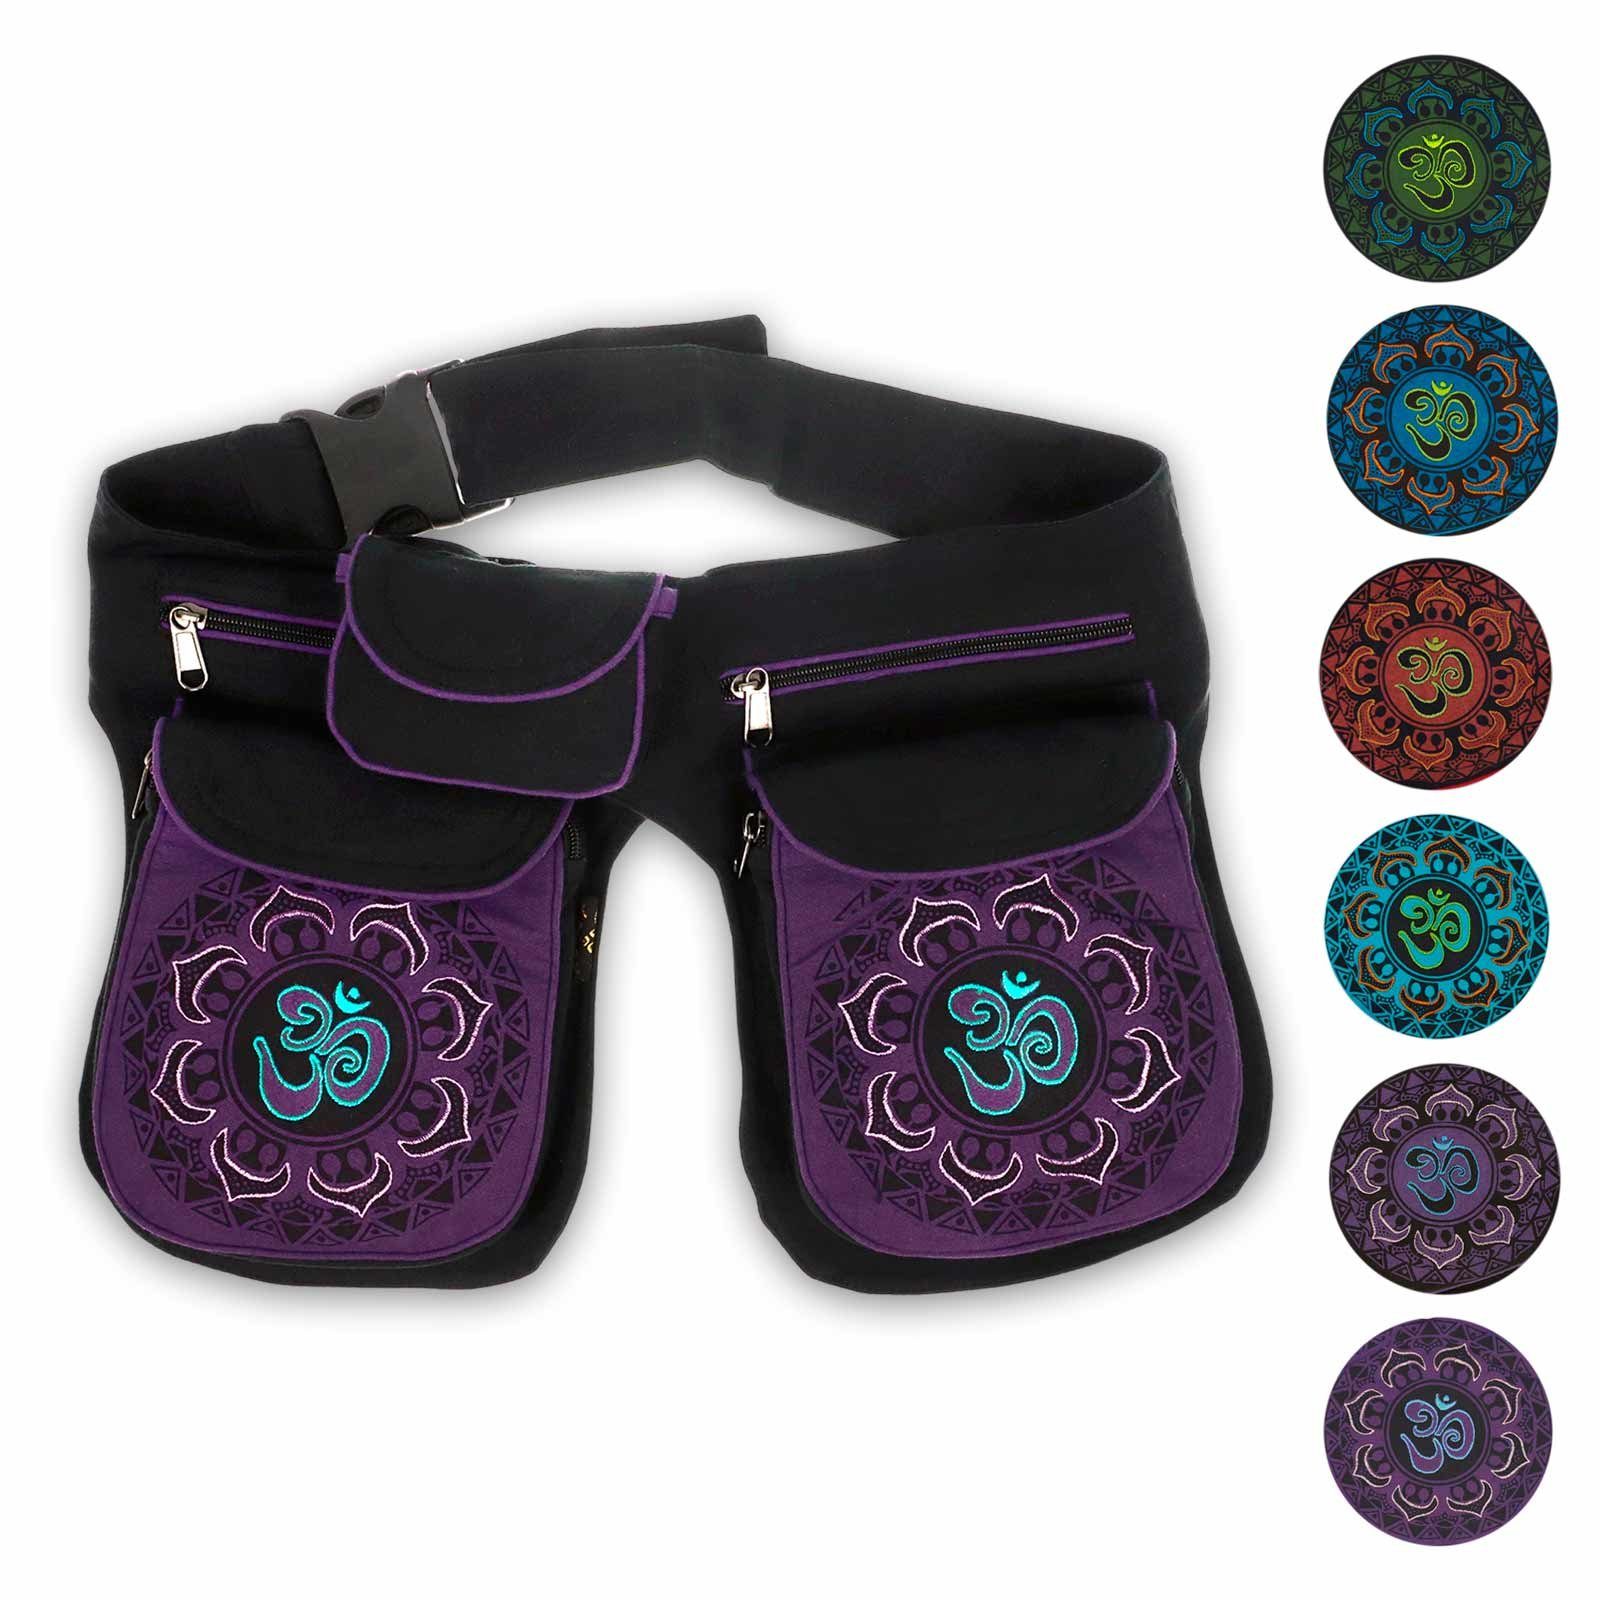 KUNST UND MAGIE Bauchtasche OM Mandala Doppel Bauchtasche Hüfttasche Mandala Gürteltasche Sidebag Schwarz / Lila | Canvas-Taschen